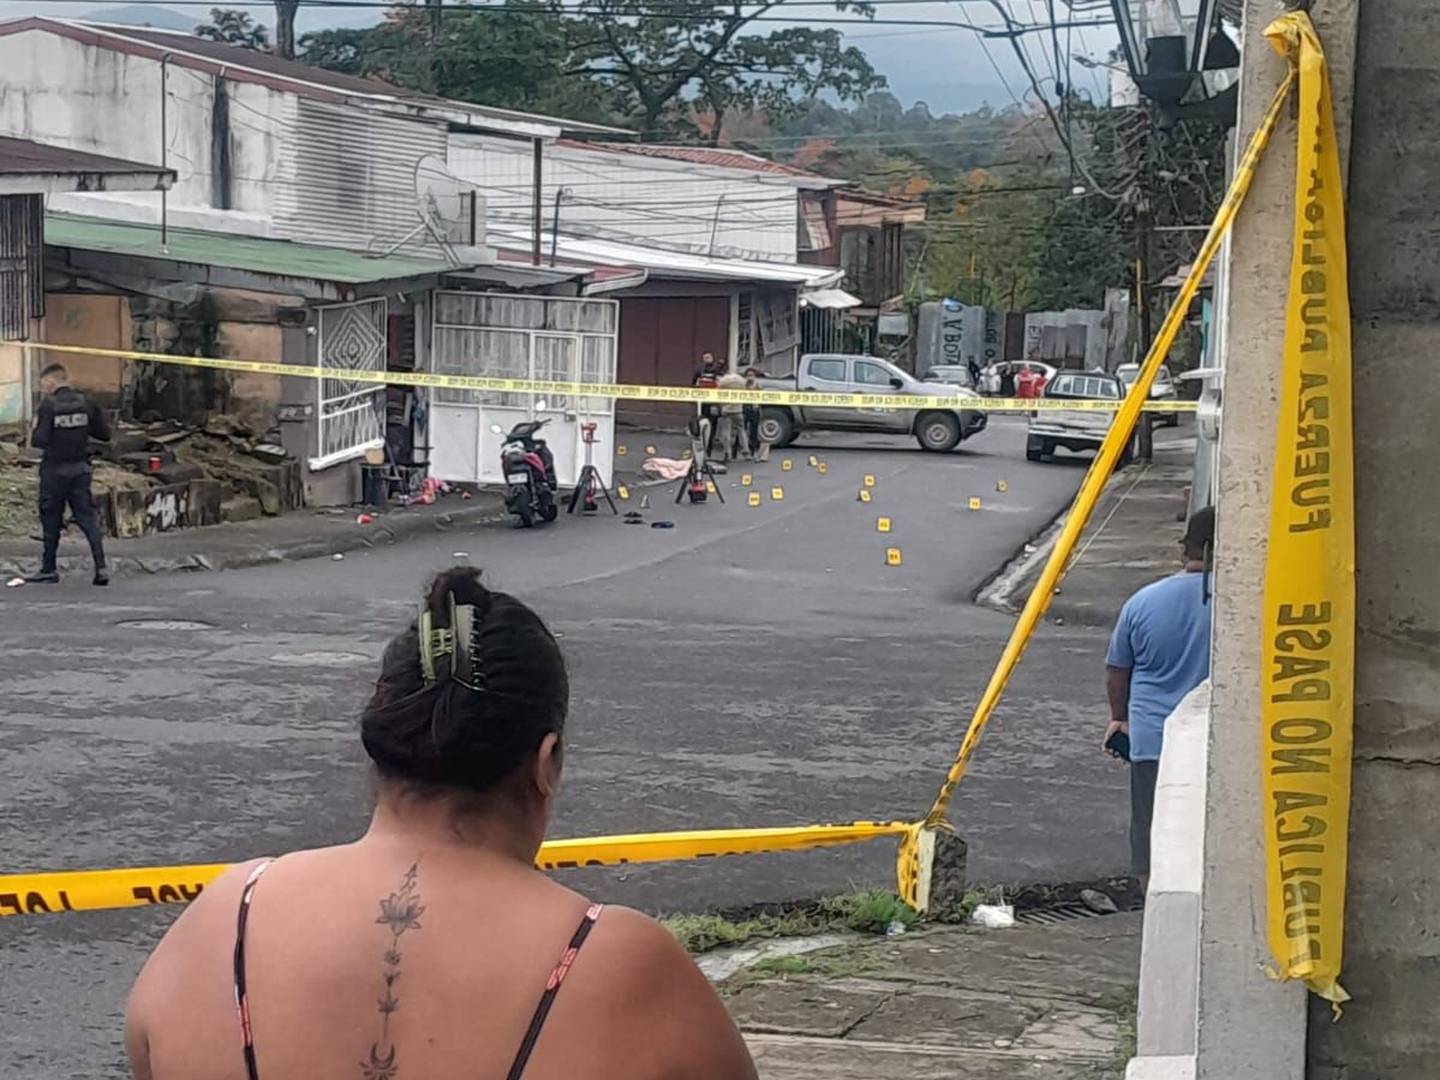 Frente a la casa donde se celebraba la fiesta, en  calle Adoquines de Pacuare Nuevo, el OIJ halló más de 12 casquillos de arma de fuego.  Dos jóvenes quedaron sin vida en el sitio. Foto: Cortesía.